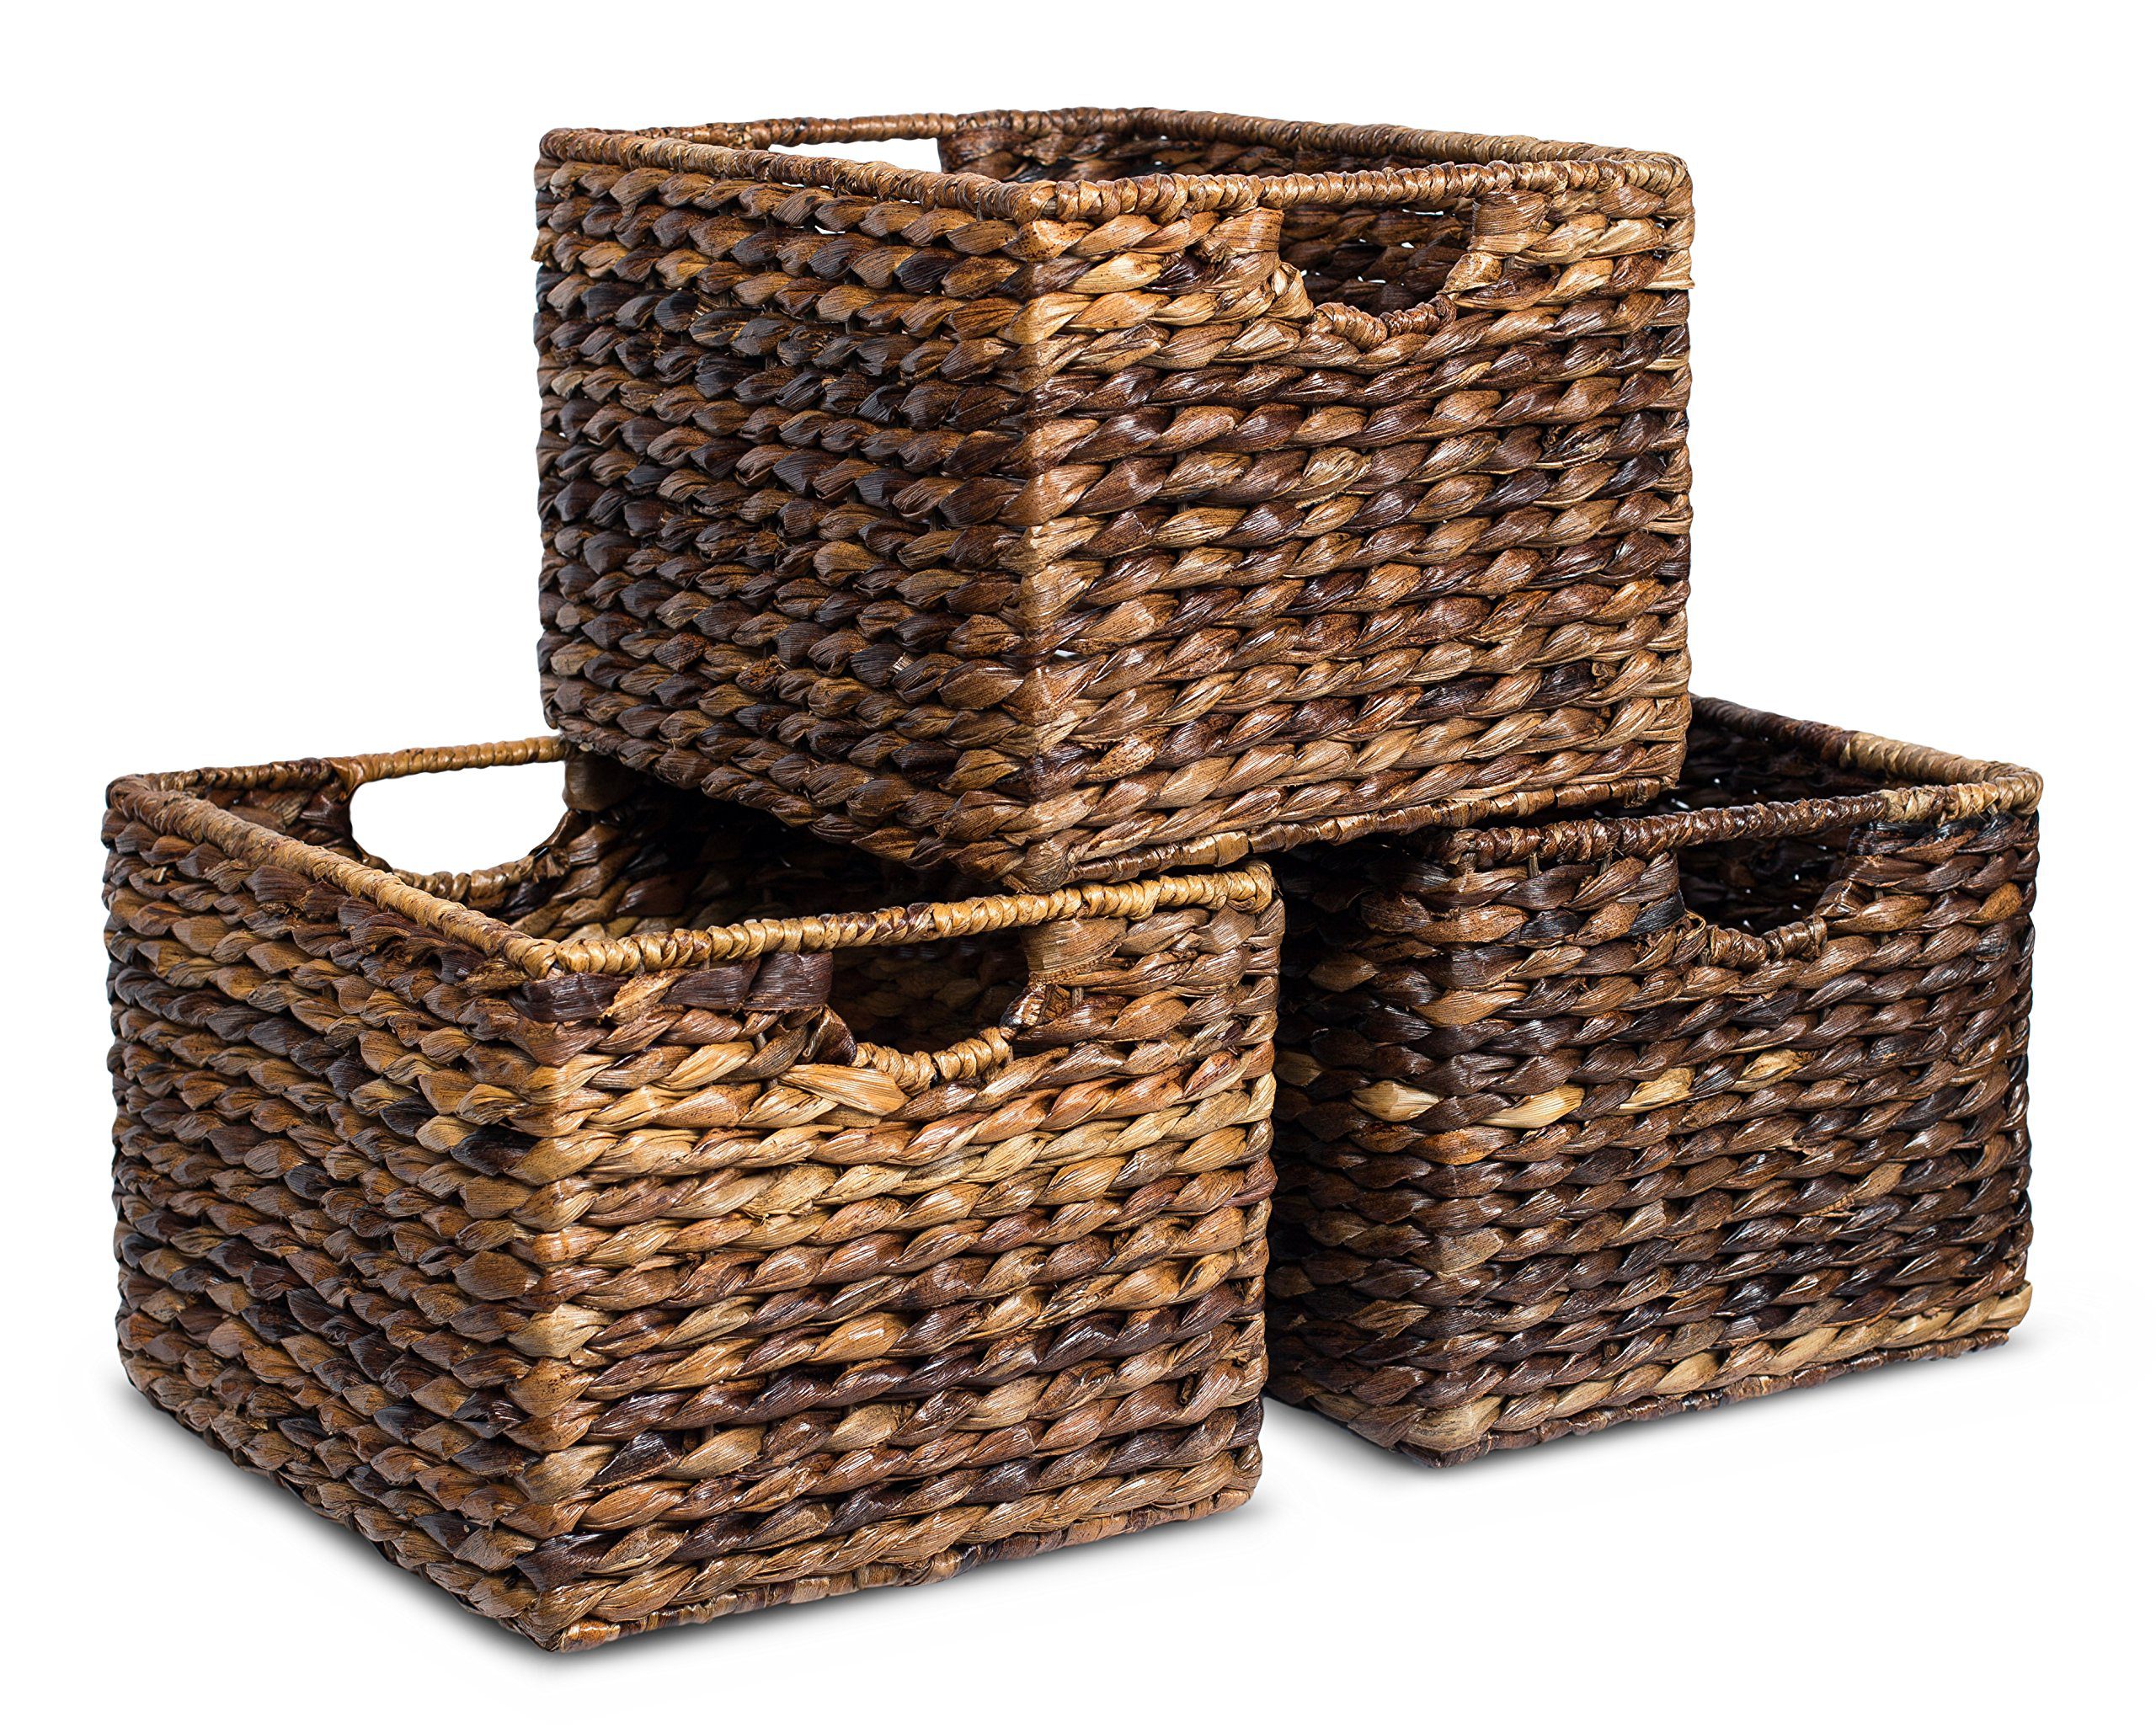 BIRDROCK HOME Woven Storage Shelf Organizer Baskets with Handles